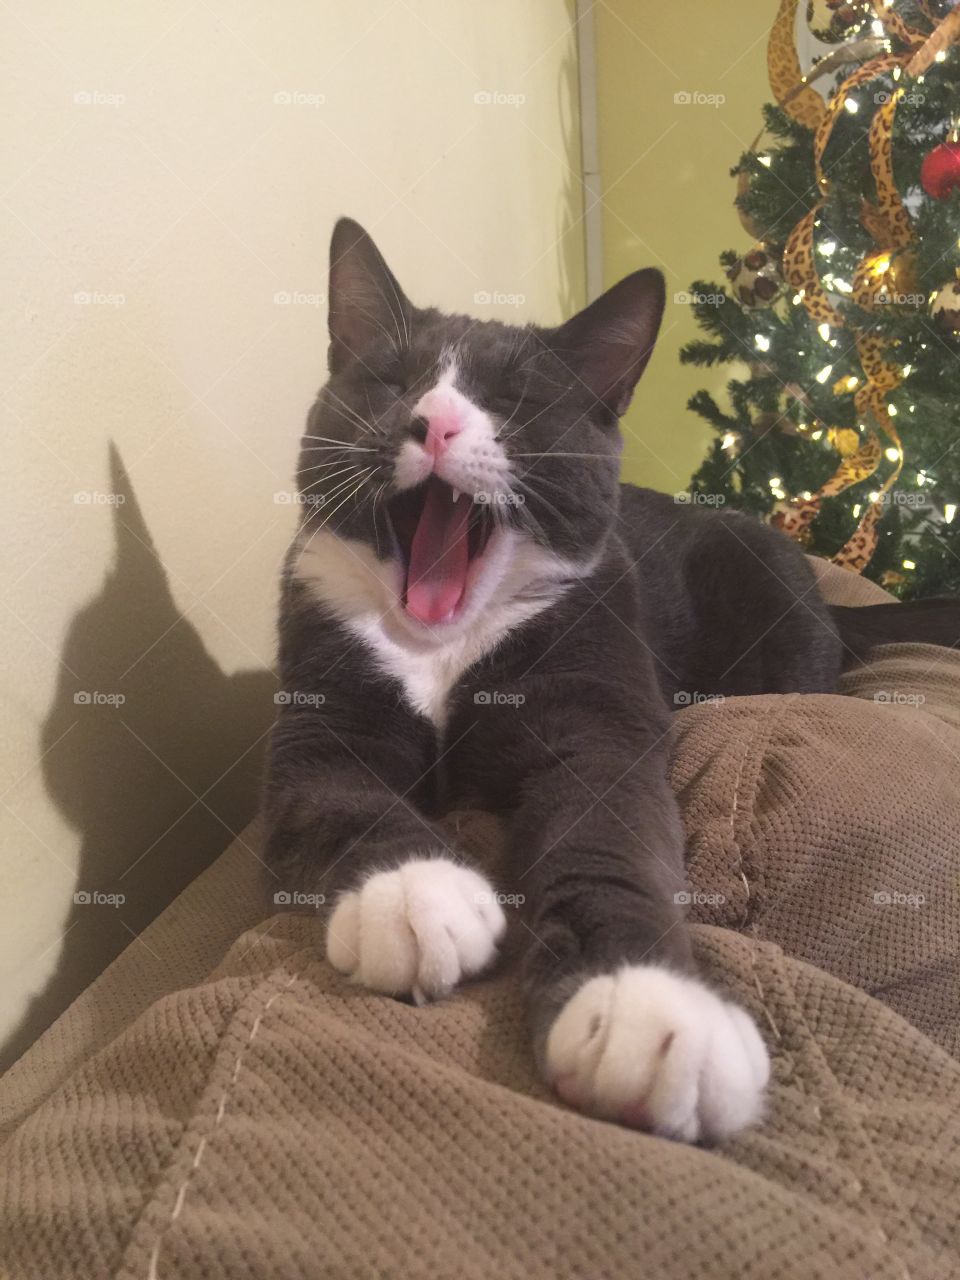 Yawning cat 